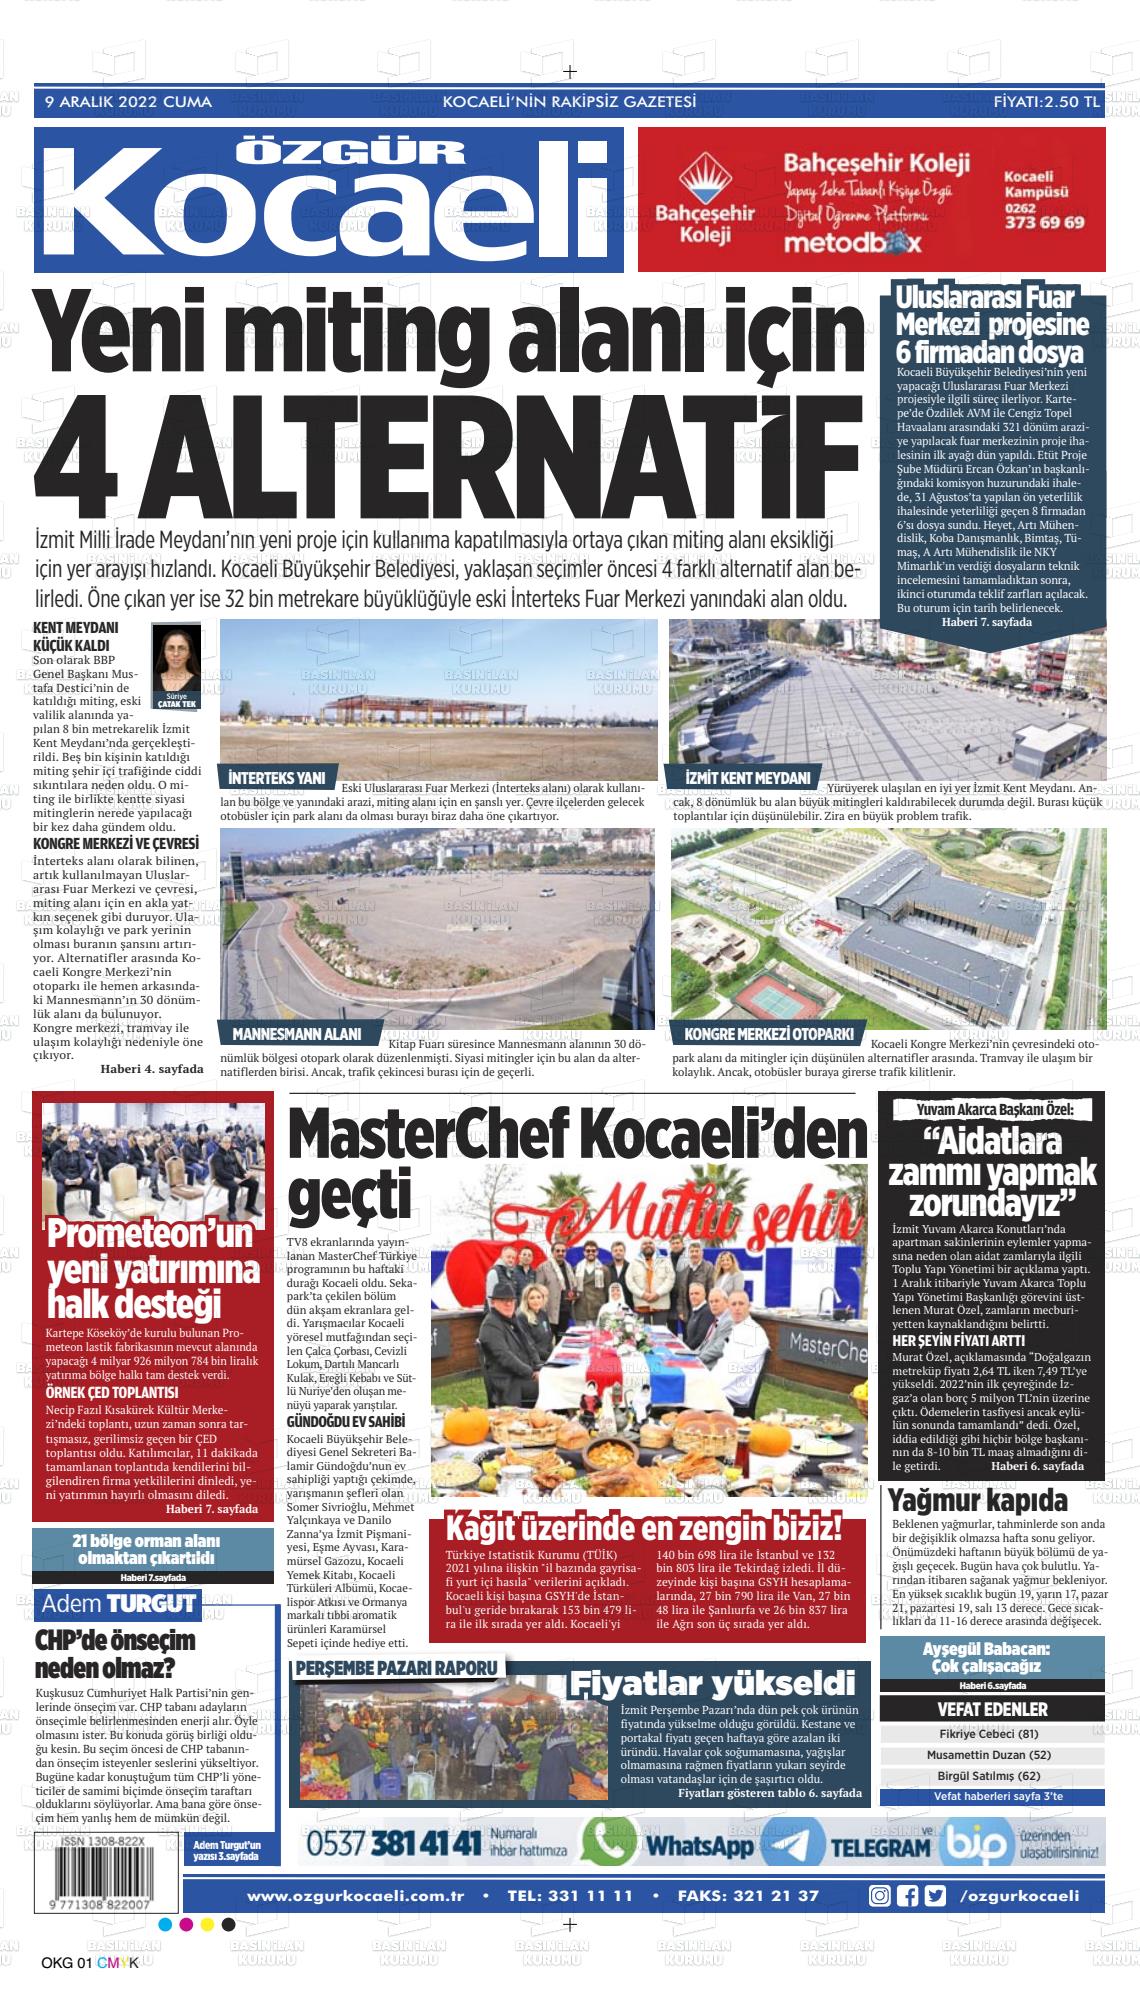 09 Aralık 2022 Özgür Kocaeli Gazete Manşeti